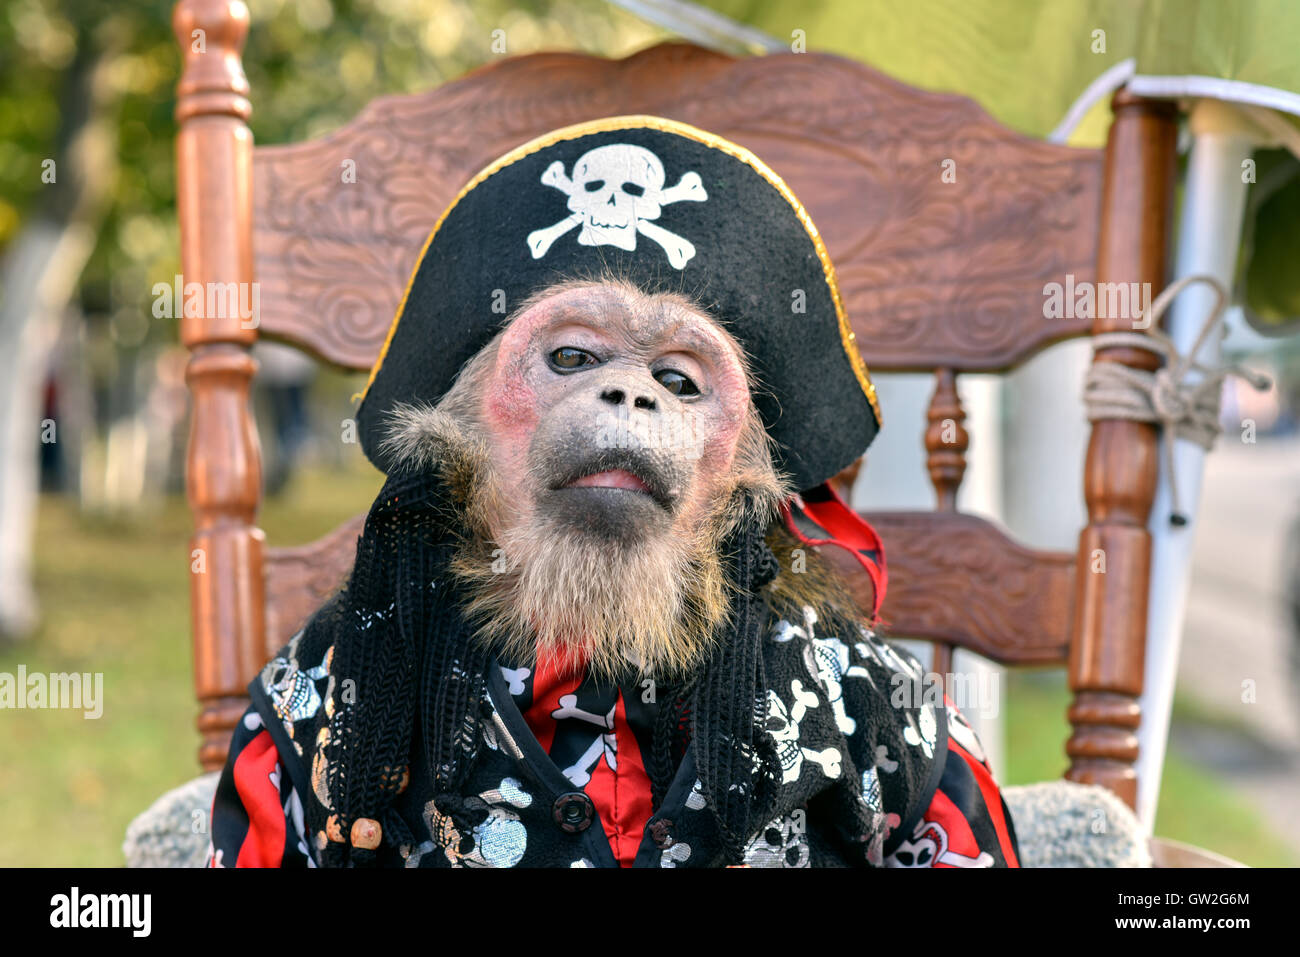 Poco de mono, vestido con traje de pirata se sienta en una silla Foto de stock